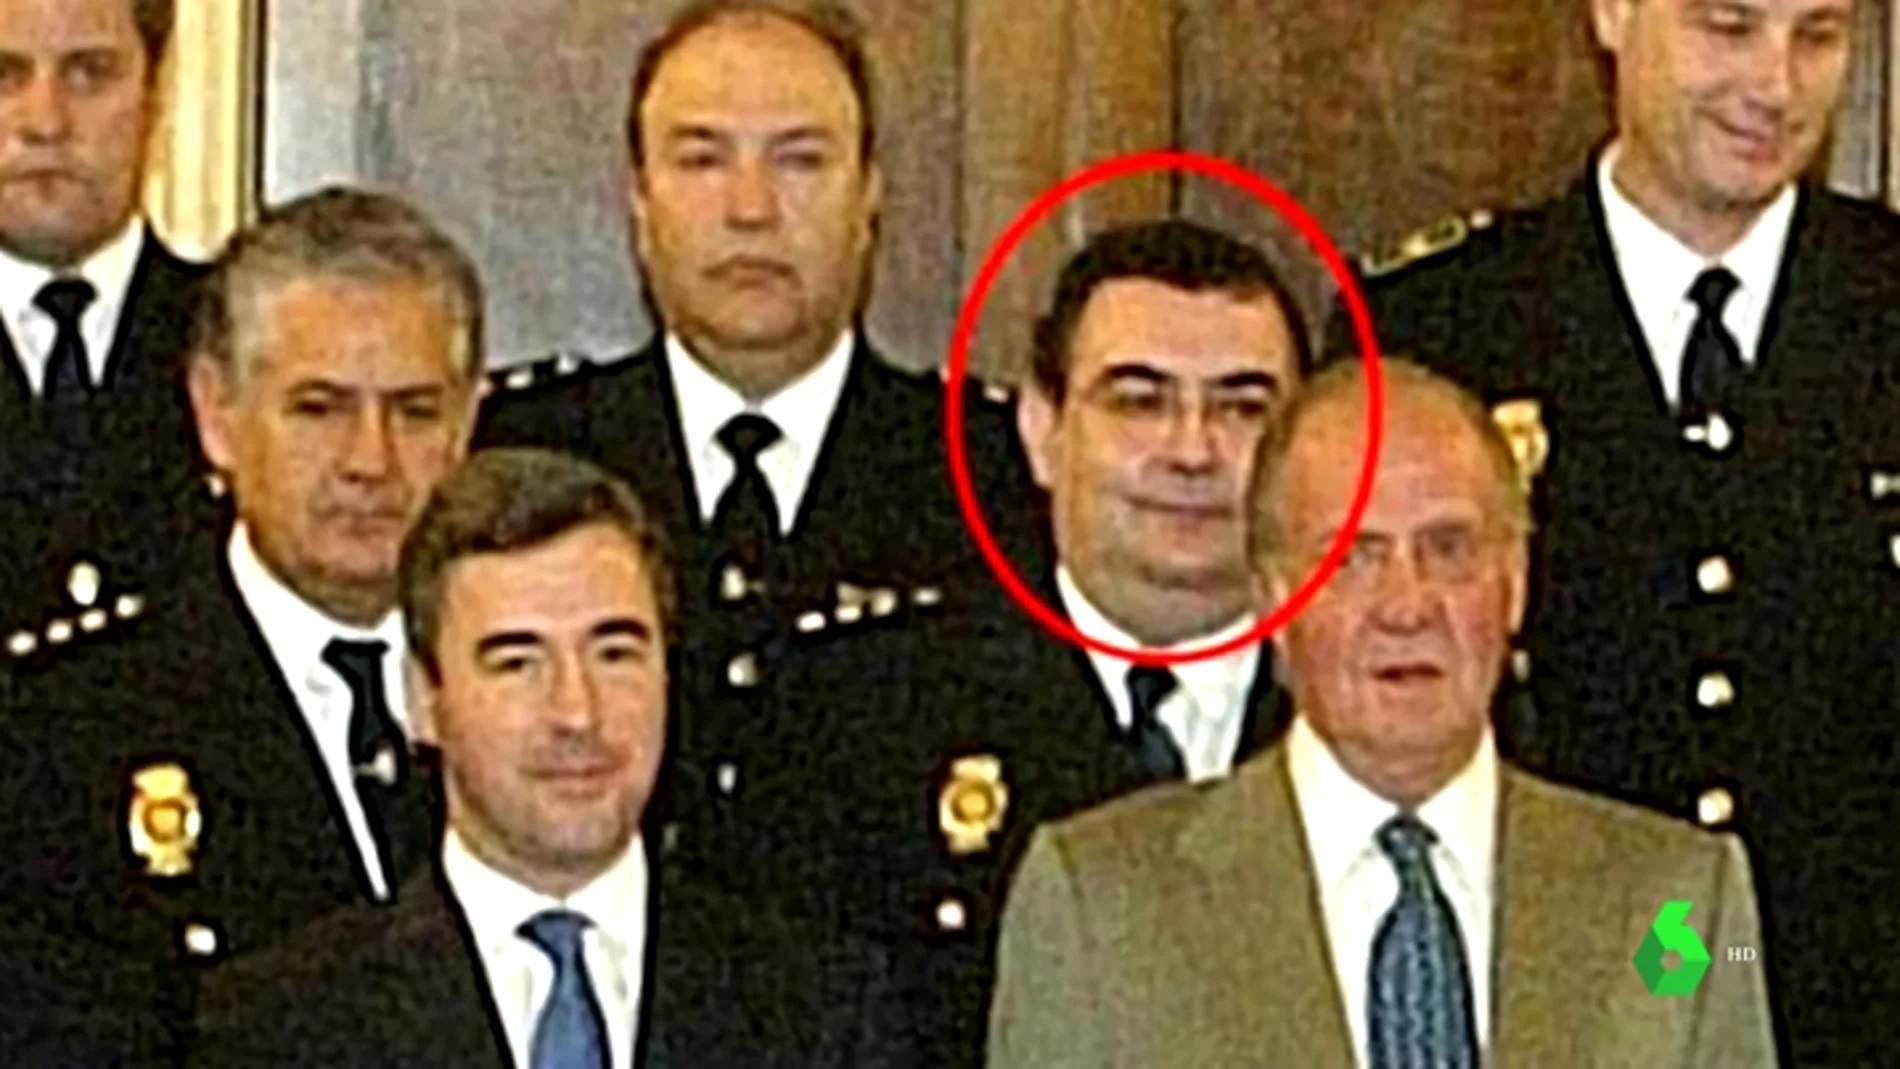 El comisario García Castaño, colaborador de Villarejo, guarda papeles sensibles de Cospedal, Sáenz de Santamaría y Arenas